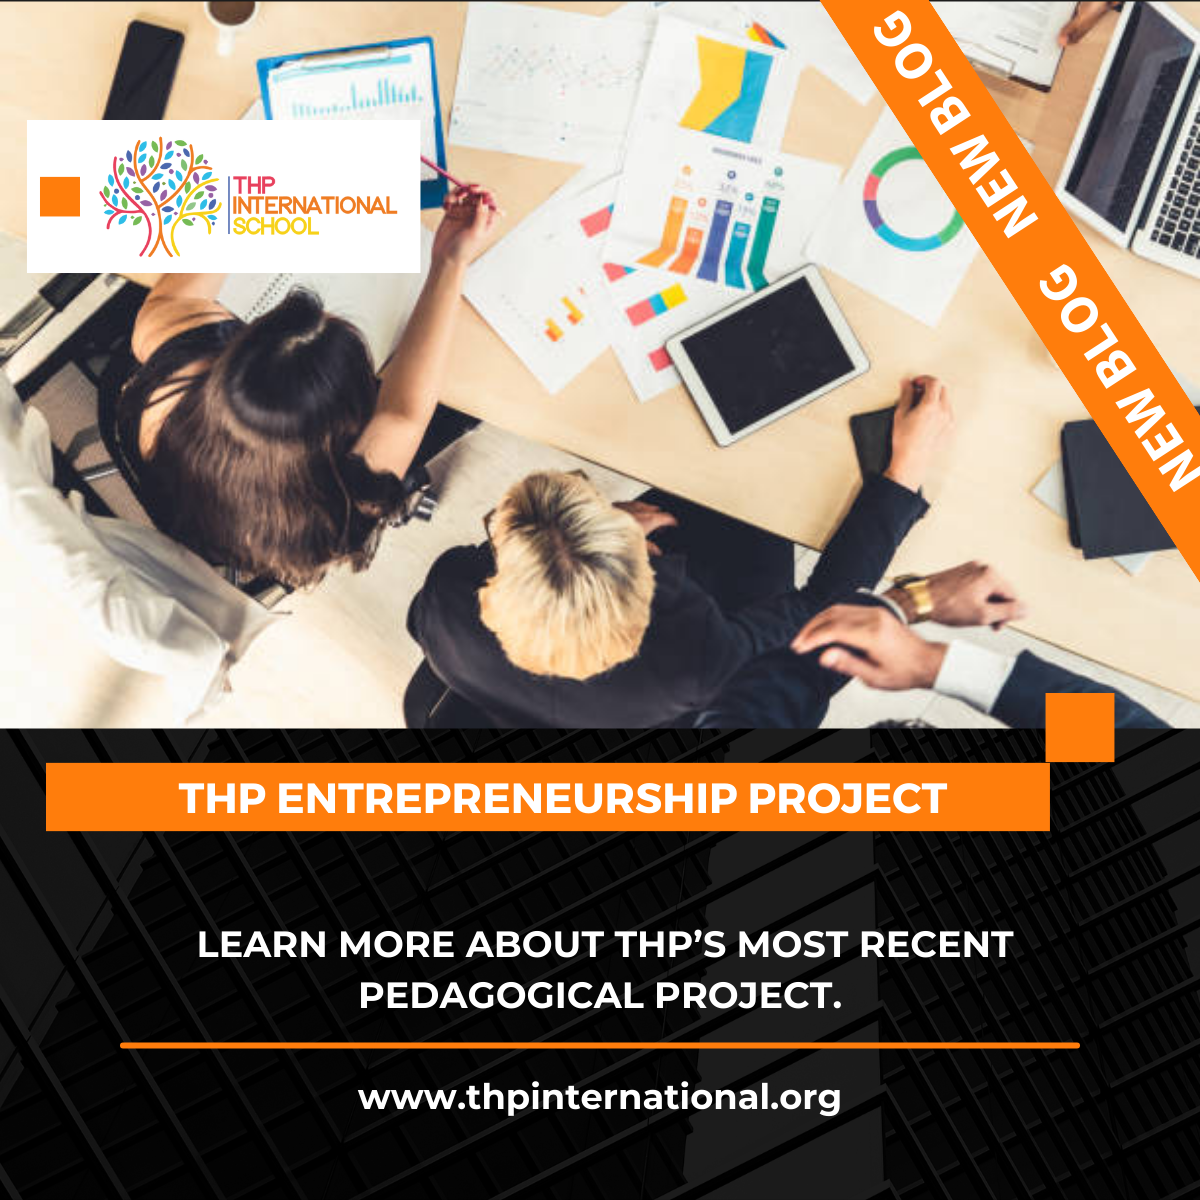 The ‘THP Entrepreneurship’ project